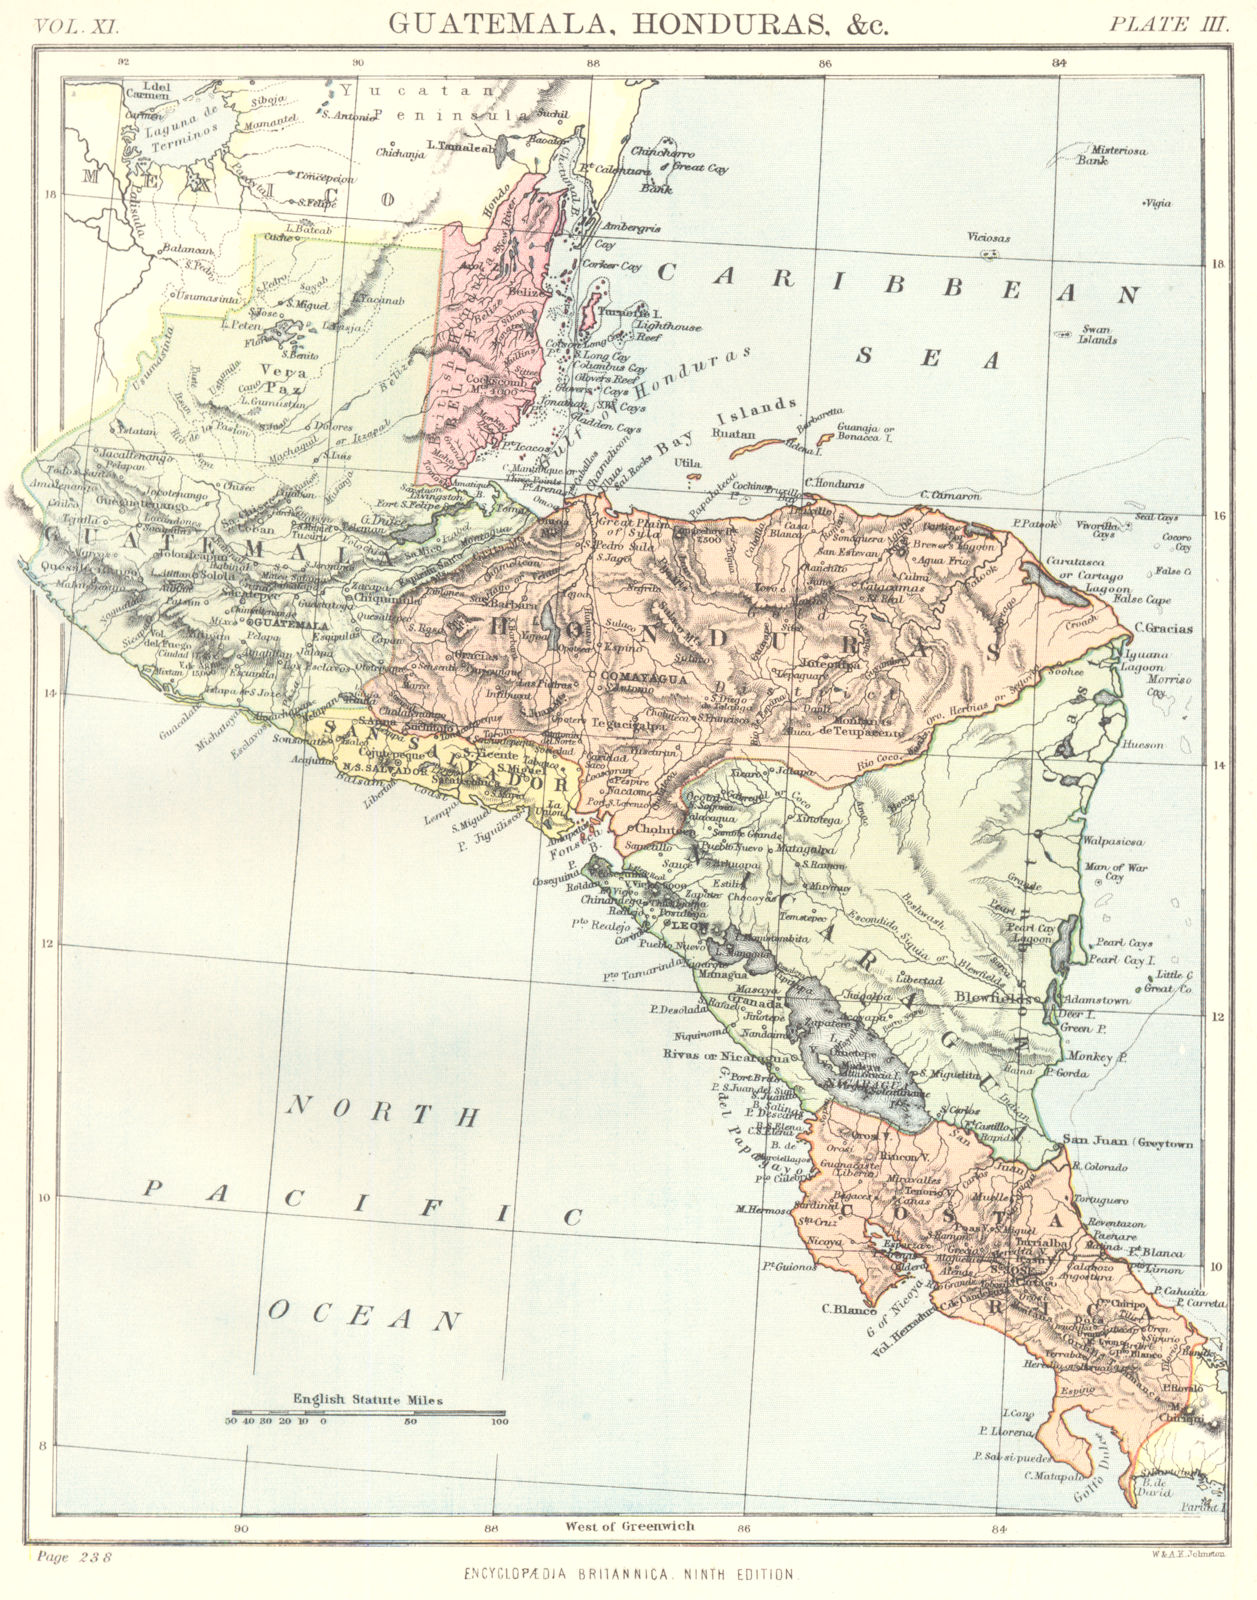 CENTRAL AMERICA. Guatemala Honduras Belize El Salvador Costa Rica 1898 old map